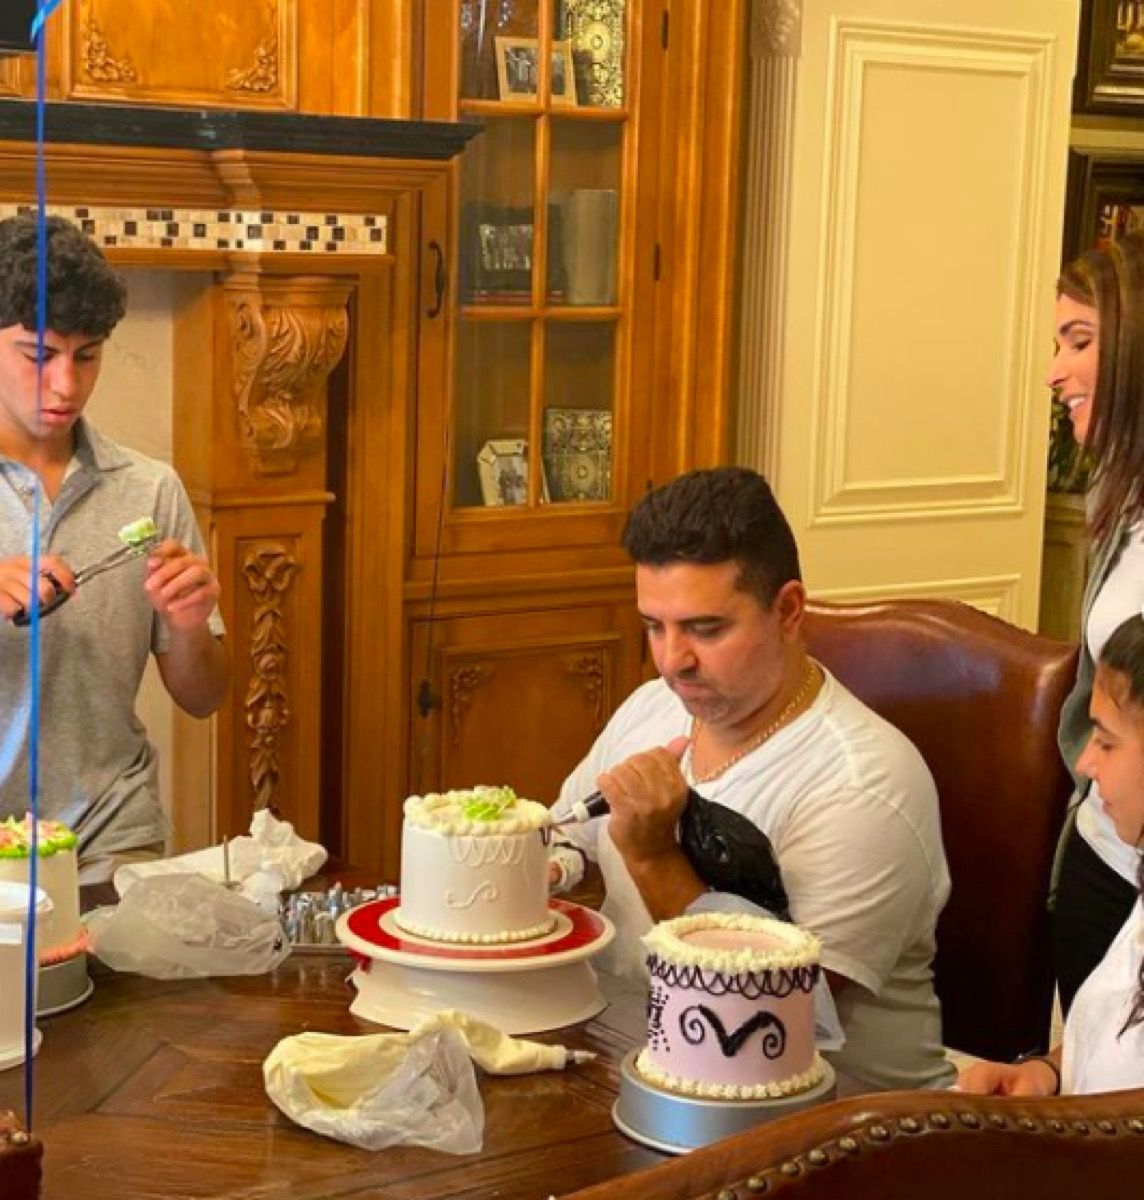 Cake Boss pečení doma s rodinou po jeho zranění ruky